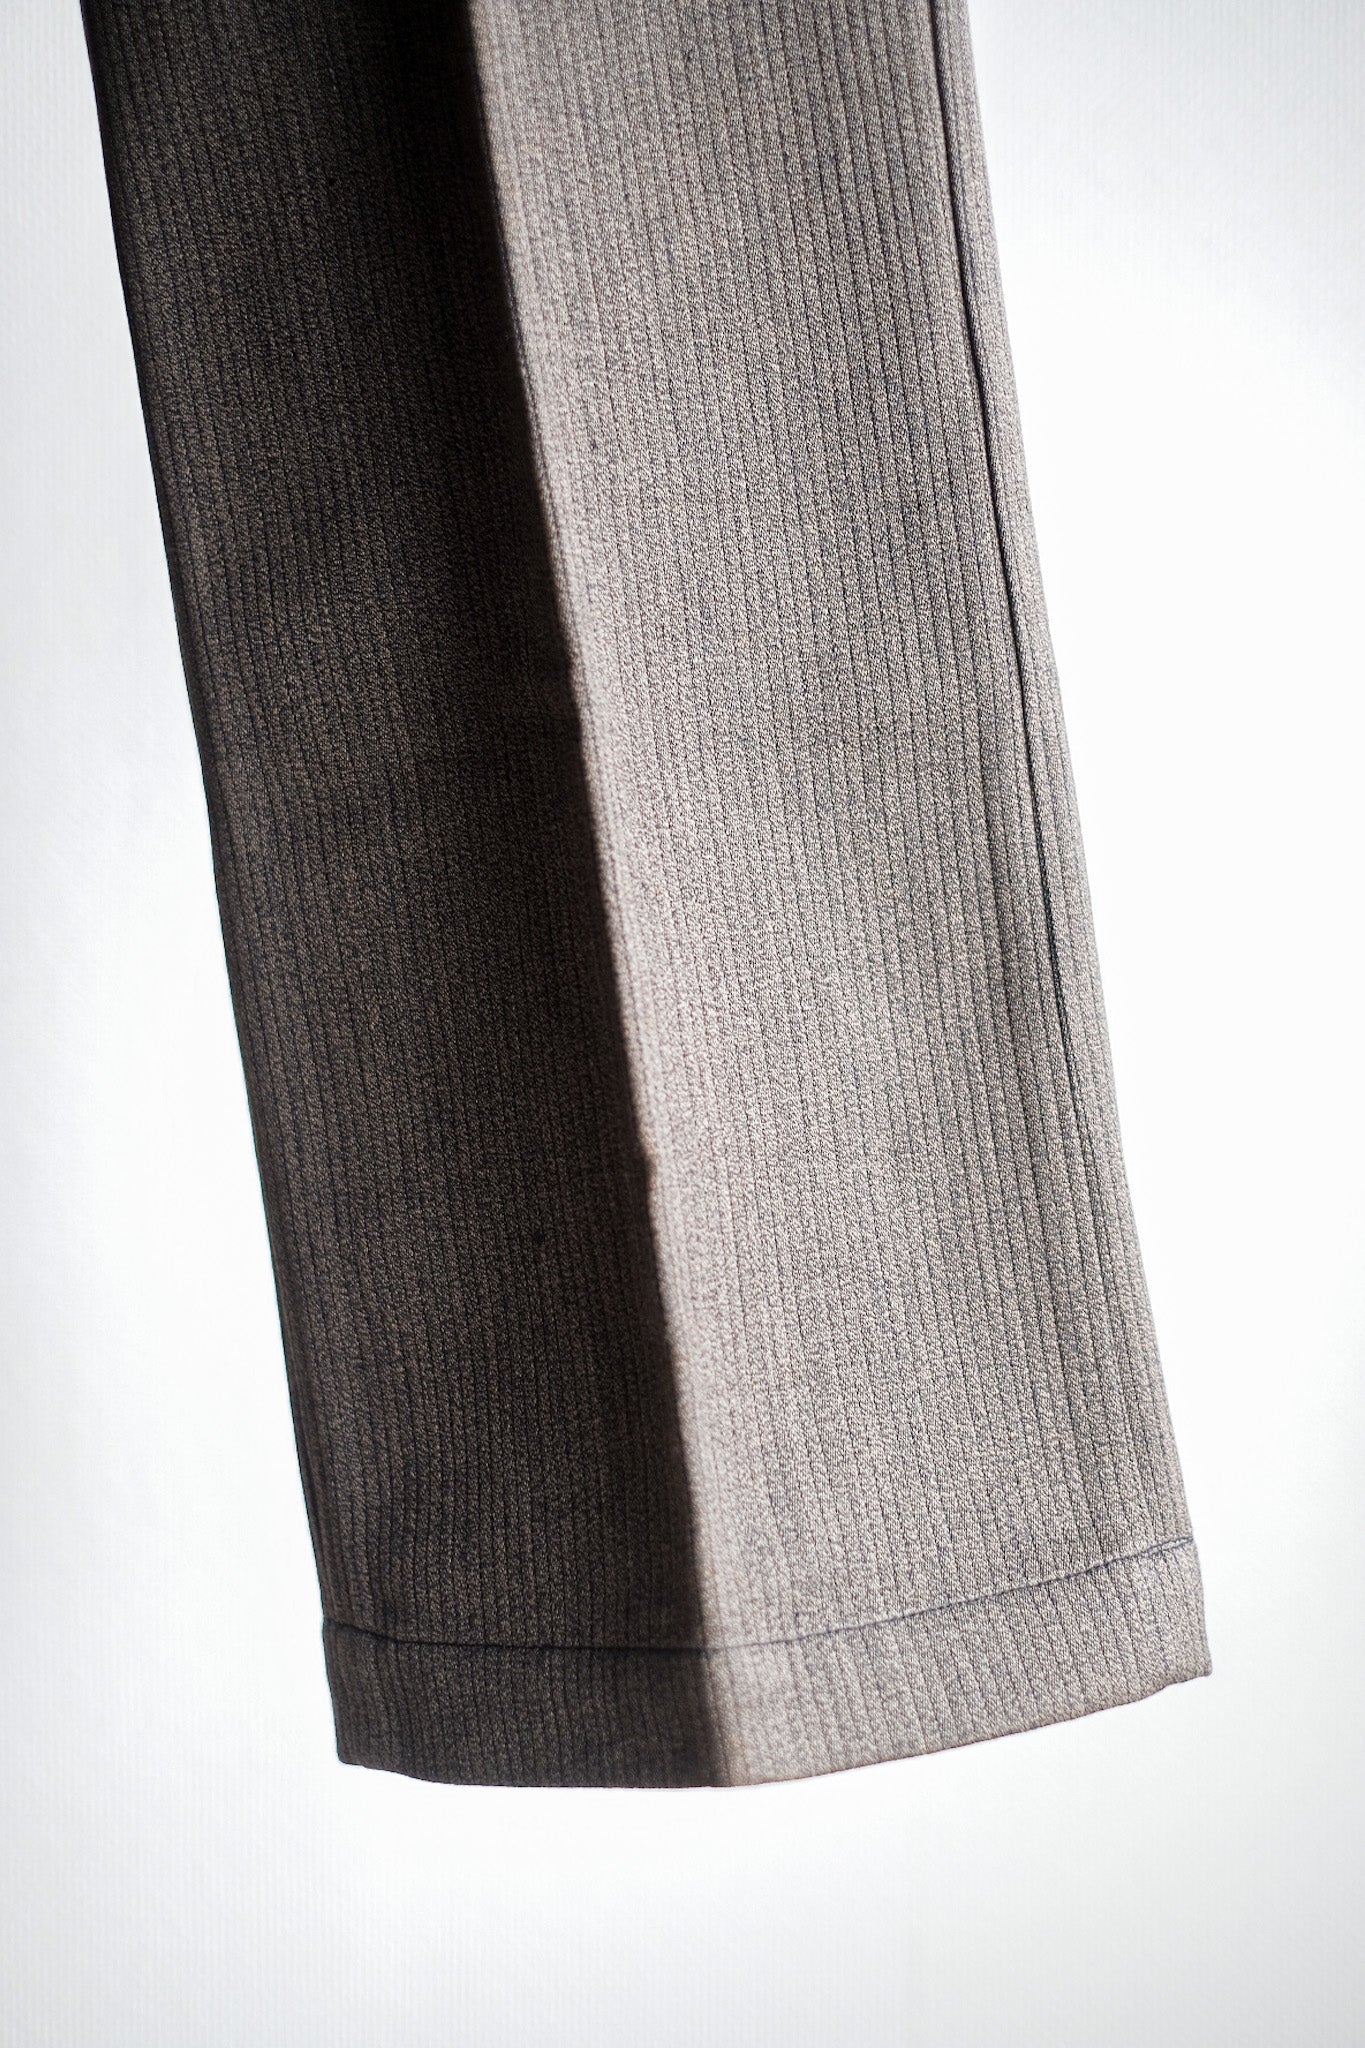 [~ 40's] French Vintage Brown Salt & Pepper Cotton Pique Pants "Dead Stock"